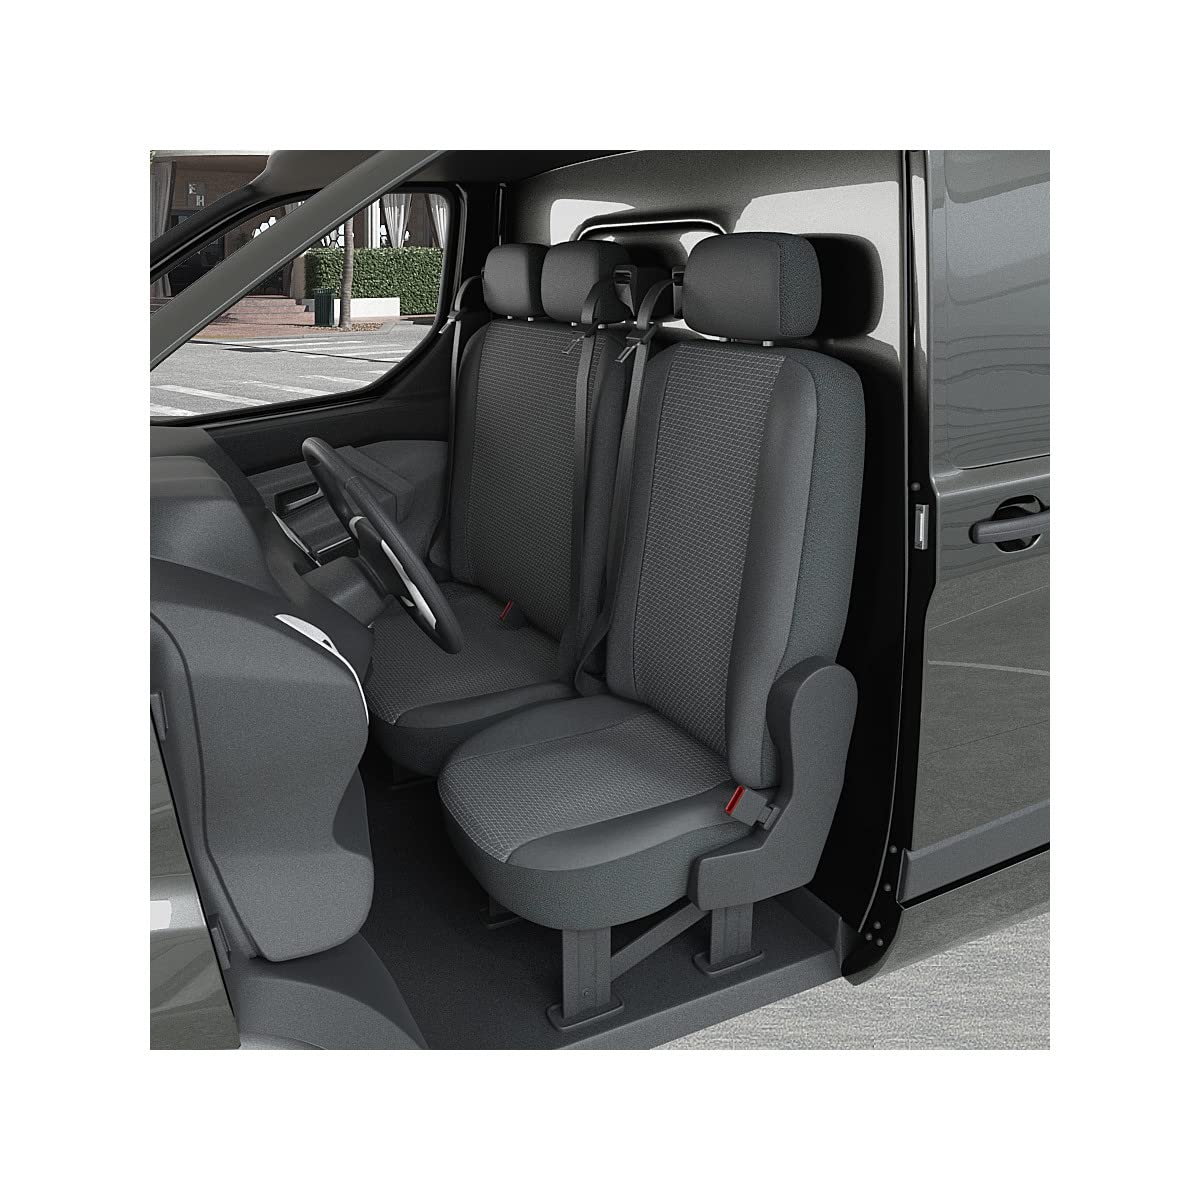 DBS 1013181 Sitzbezug für Auto/Nutzfahrzeuge, Kunstleder, schnelle Montage, kompatibel mit Airbag-Isofix-1013181 von DBS